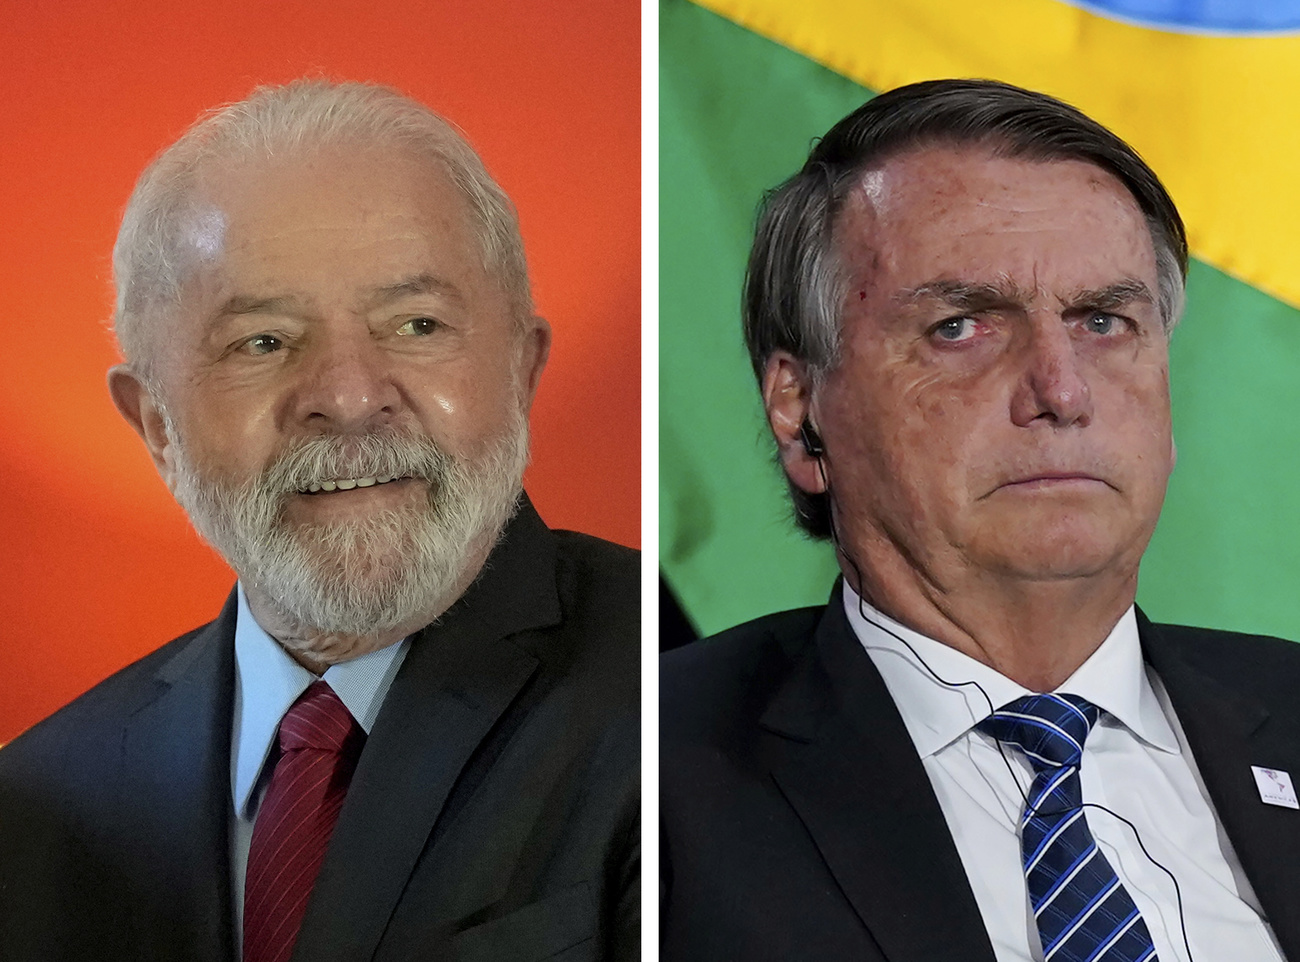 Luiz Inácio Lula da Silva and Jair Bolsonaro